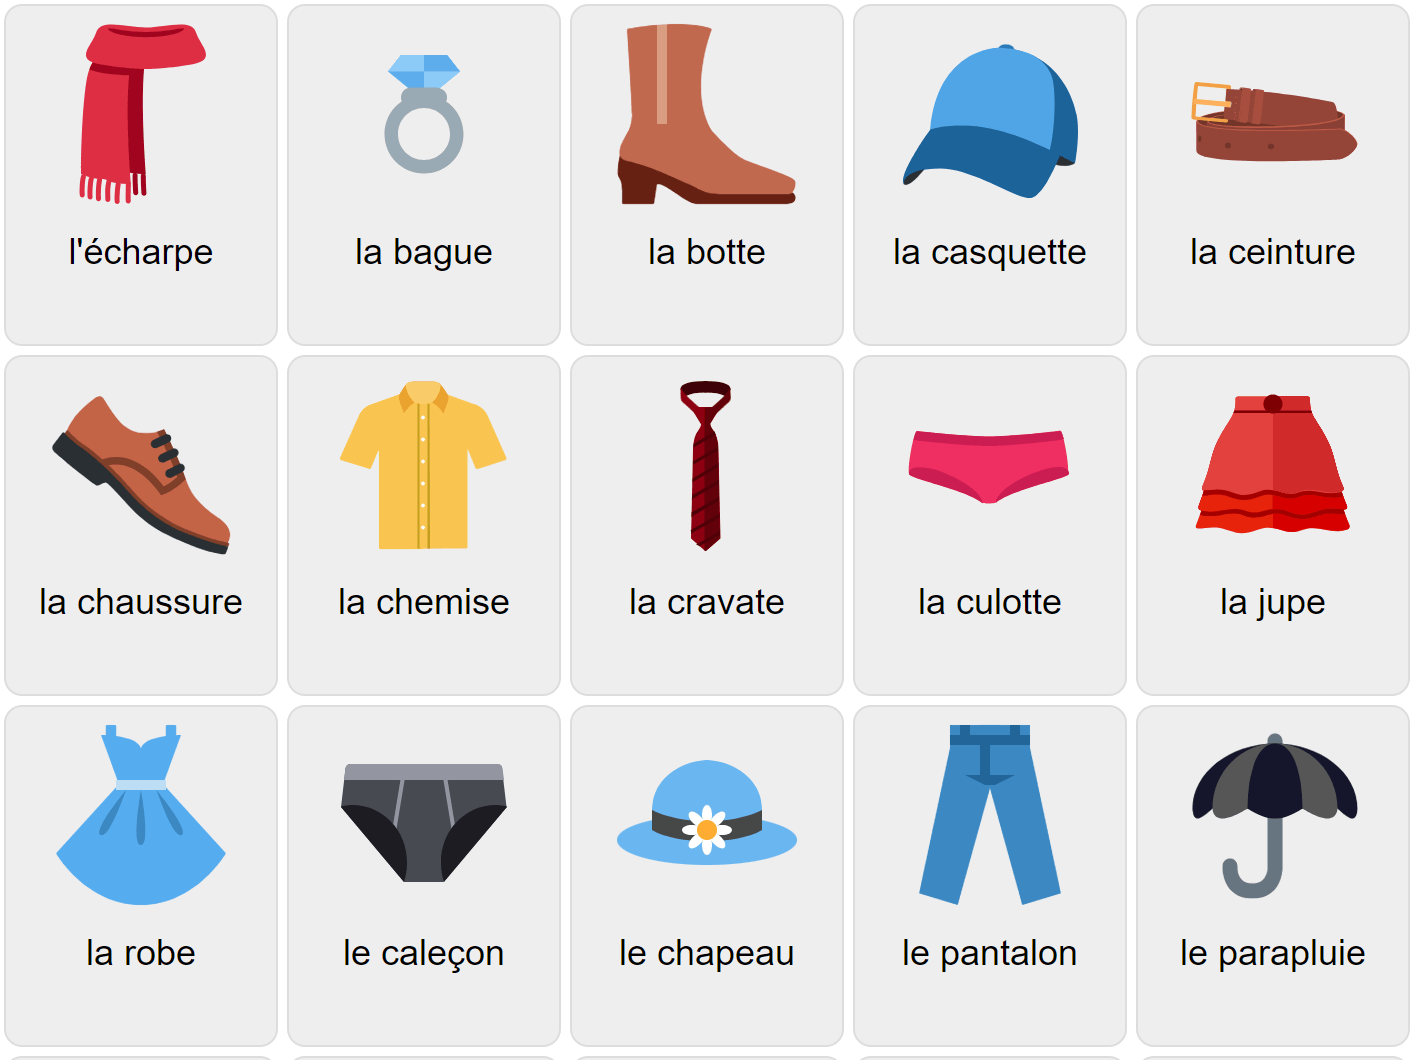 Одежда на французском языке